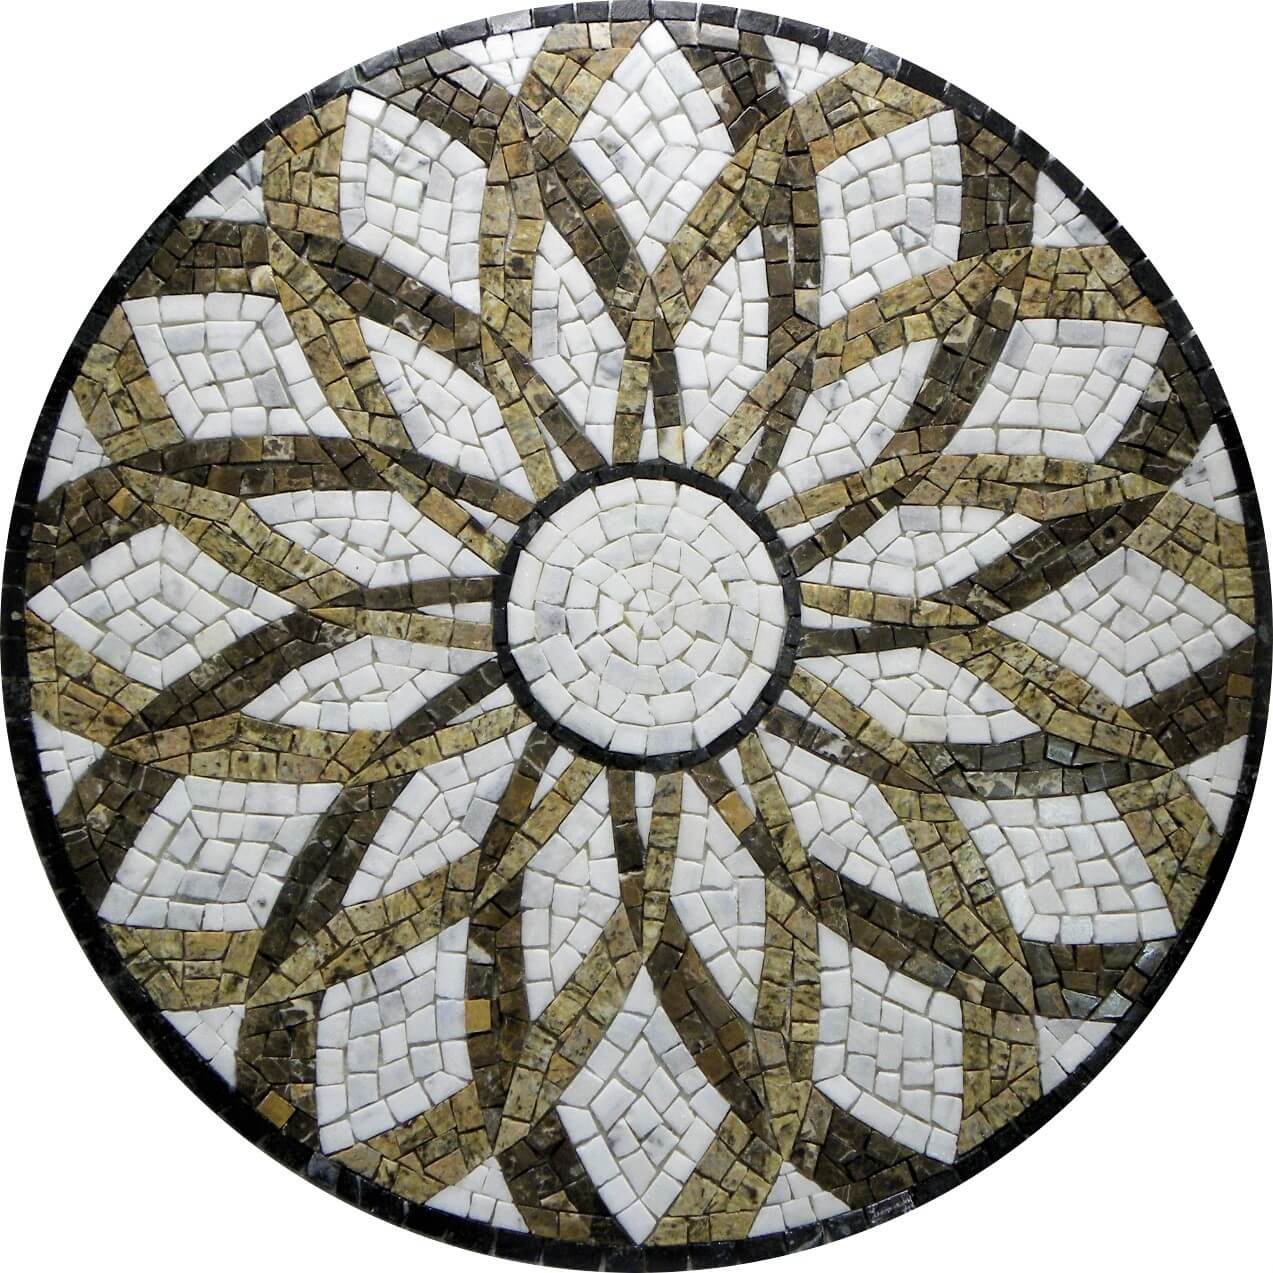 Piso em Mosaico Romano Vortice 80cm